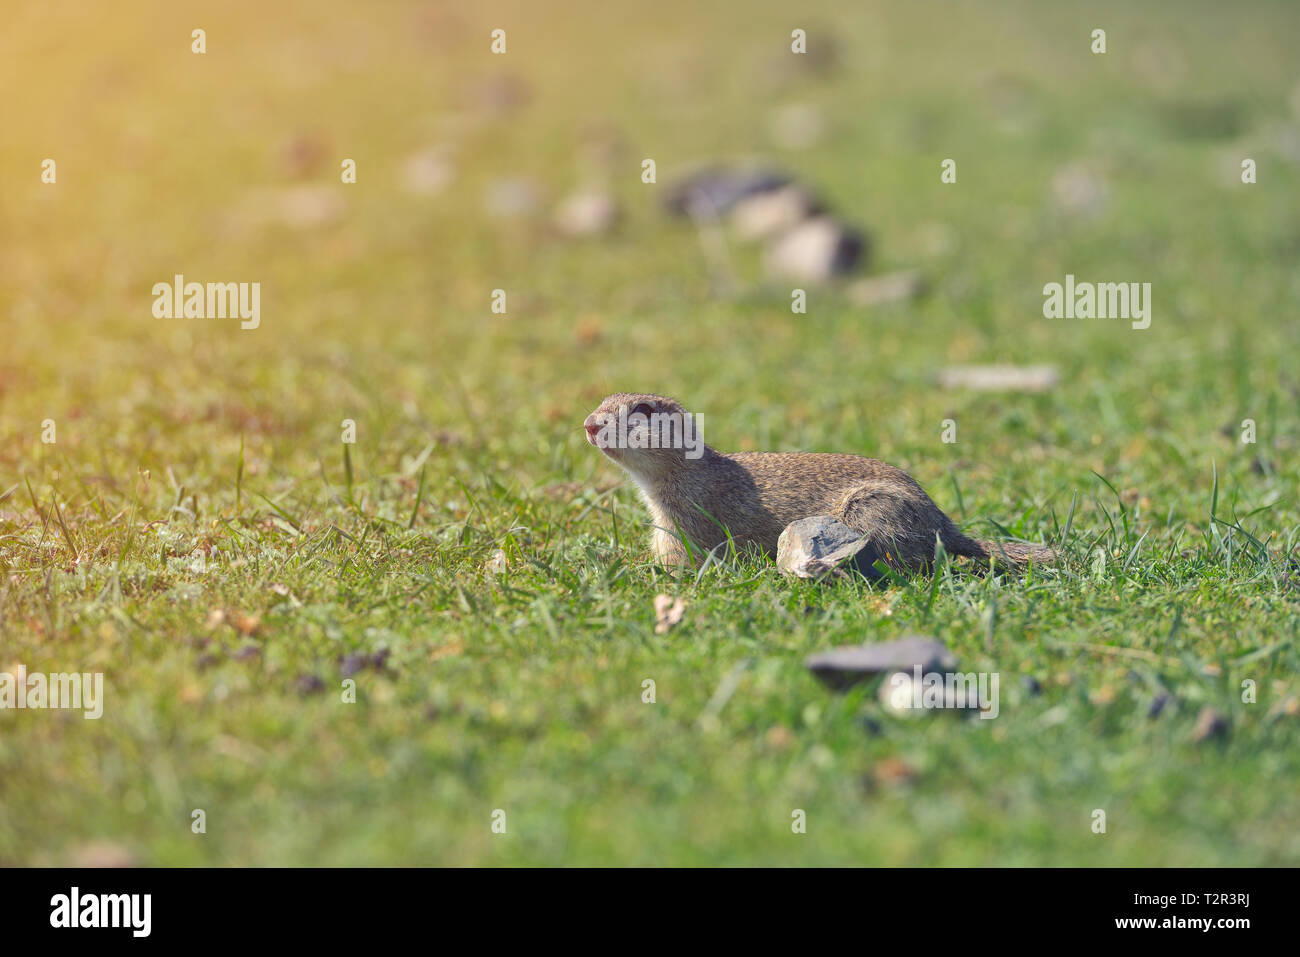 Spermophile européenne debout dans l'herbe. (Spermophilus citellus) Scène de la faune de la nature. Le spermophile meadow Banque D'Images